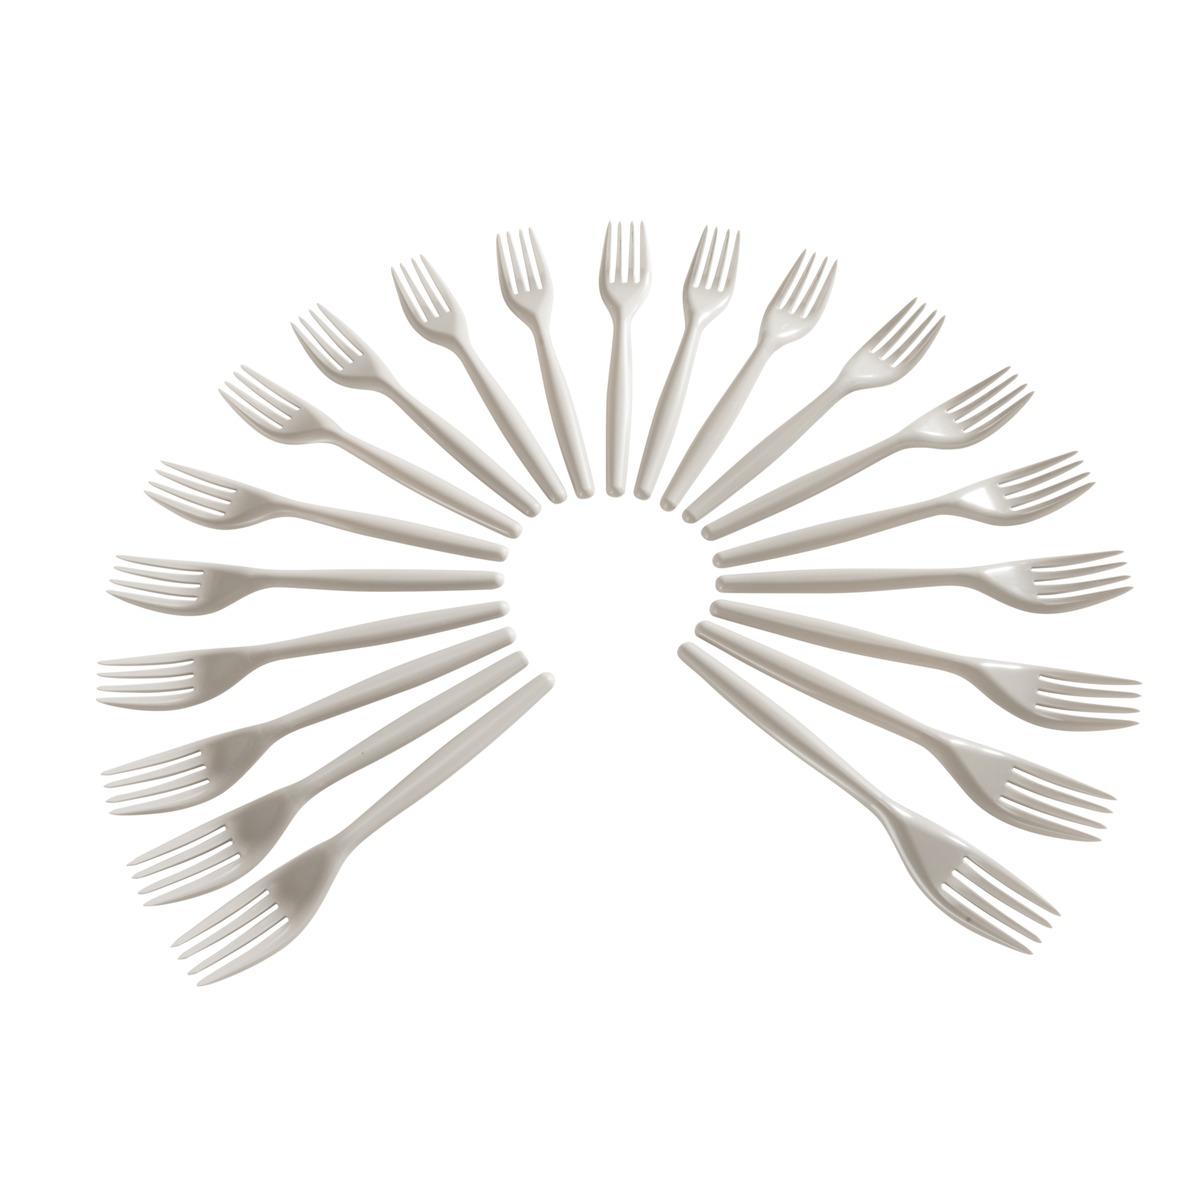 Lot de 20 fourchettes en plastique - Longueur 18 cm - Beige taupe